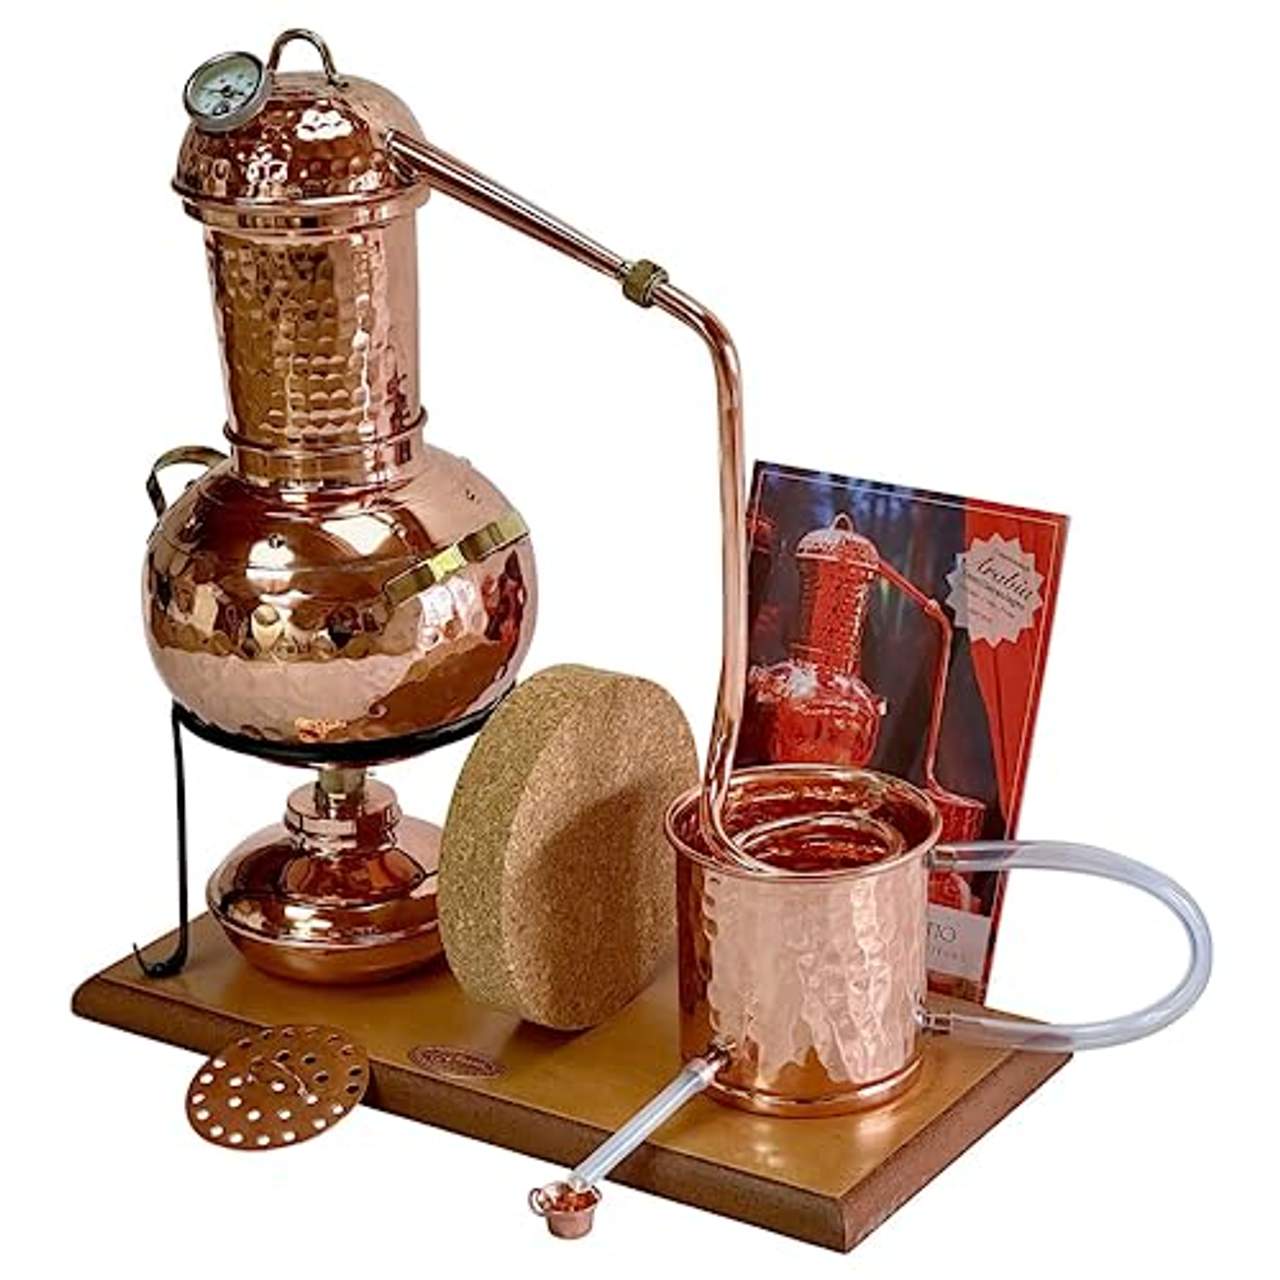 Copper Garden Aroma Destille Arabia 2 Liter